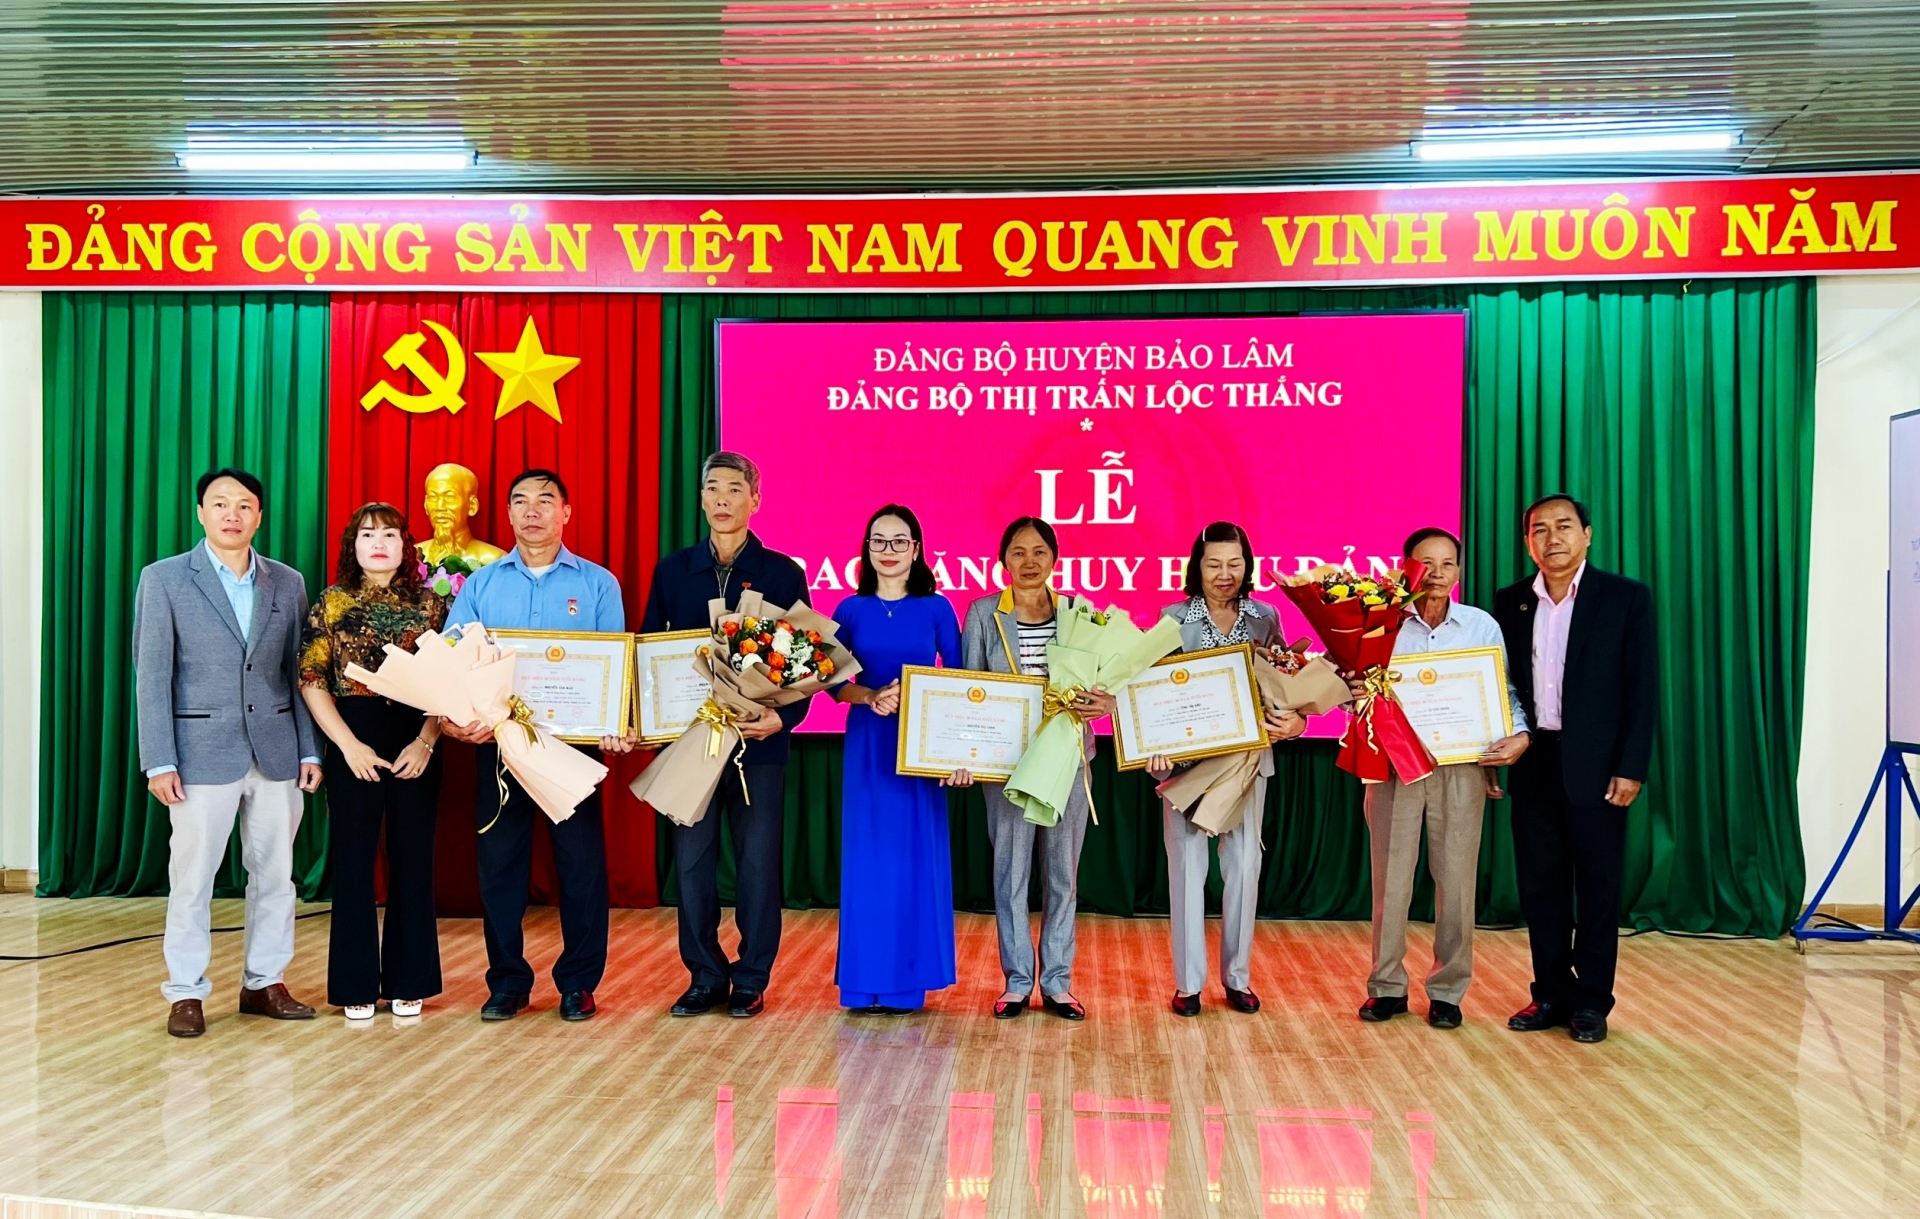 Đồng chí KLình - Phó Bí thư Thường trực Huyện ủy Bảo Lâm, Chủ tịch HĐND huyện trao tặng Huy hiệu Đảng cho các đảng viên tại thị trấn Lộc Thắng